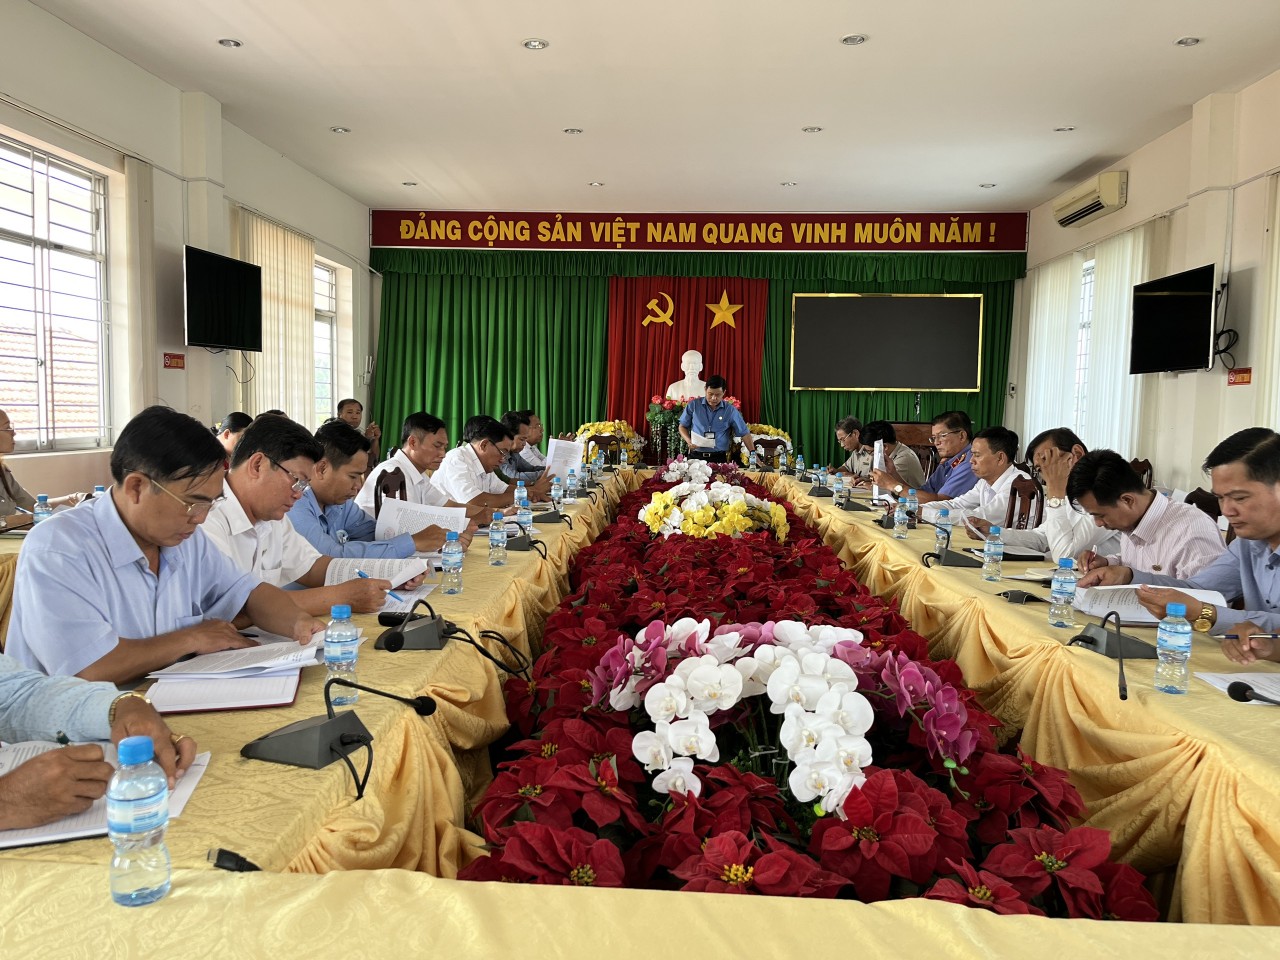 Thủ thừa: Ban chỉ đạo THADS huyện Thủ Thừa tổ chức họp giải quyết án khó